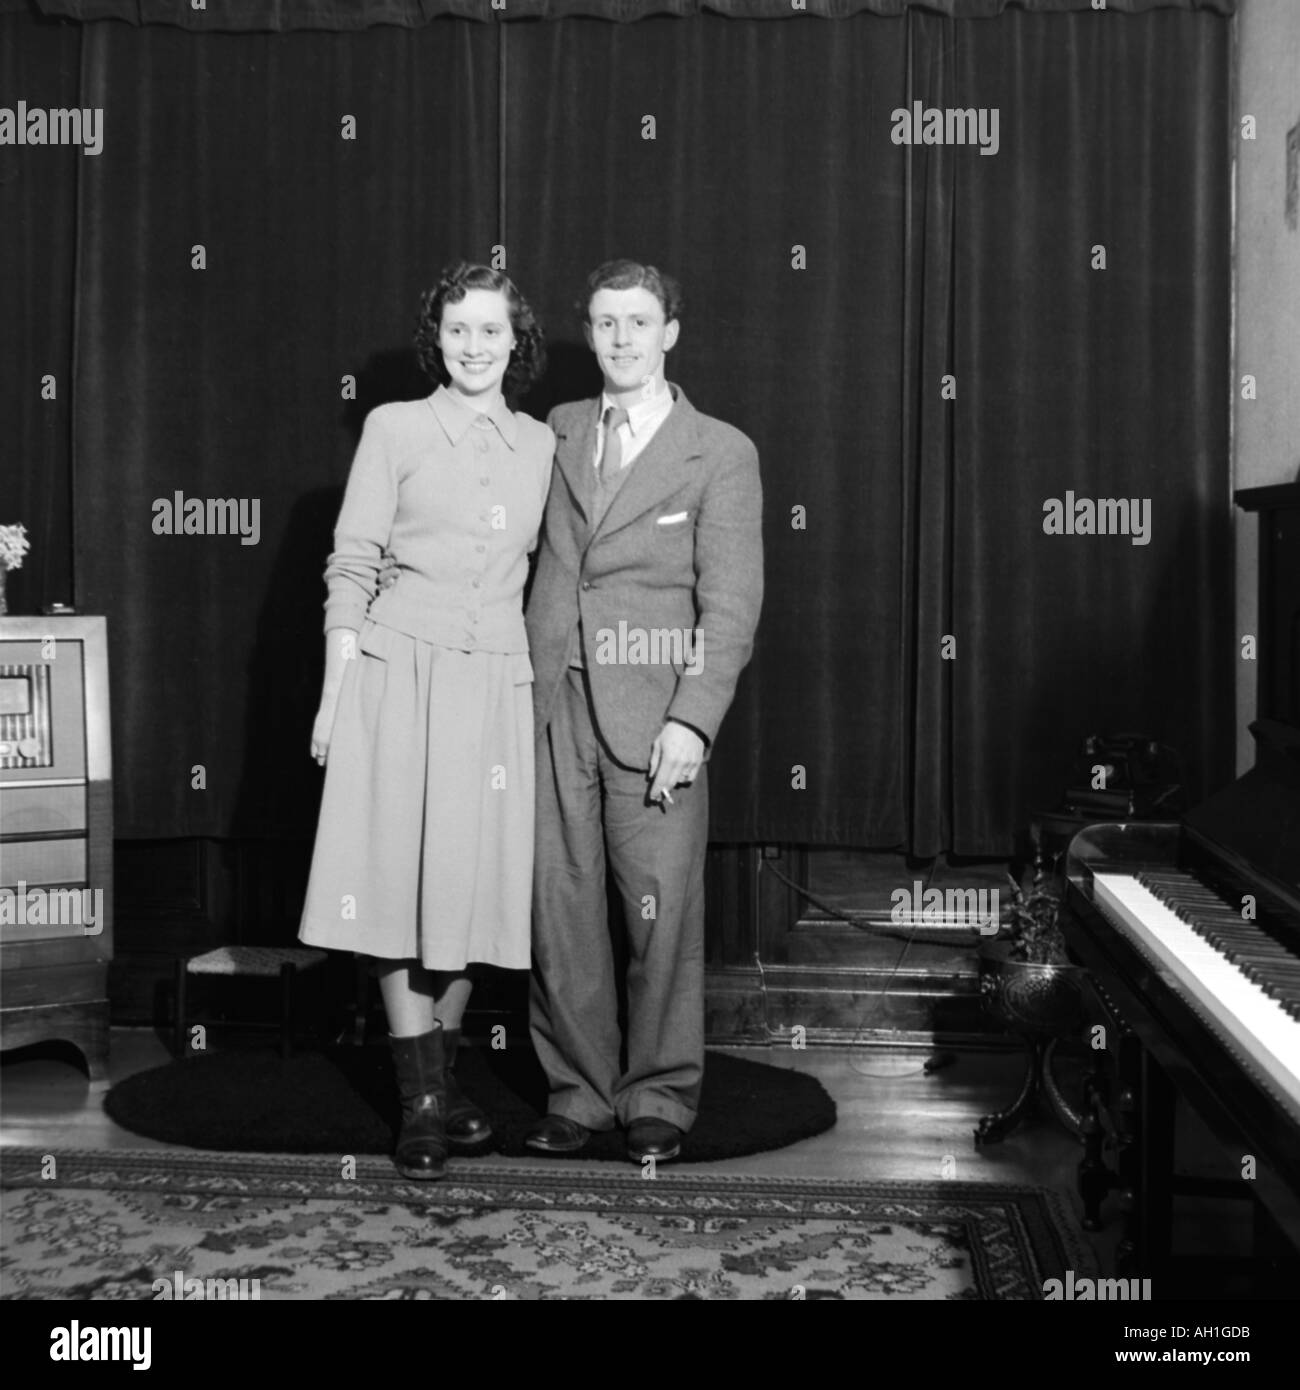 OLD VINTAGE PHOTO DE FAMILLE MARIÉS SNAP SHOT COUPLE STANDING IN SALON AVEC PIANO ET VIEILLE RADIO VERS 1950 Banque D'Images